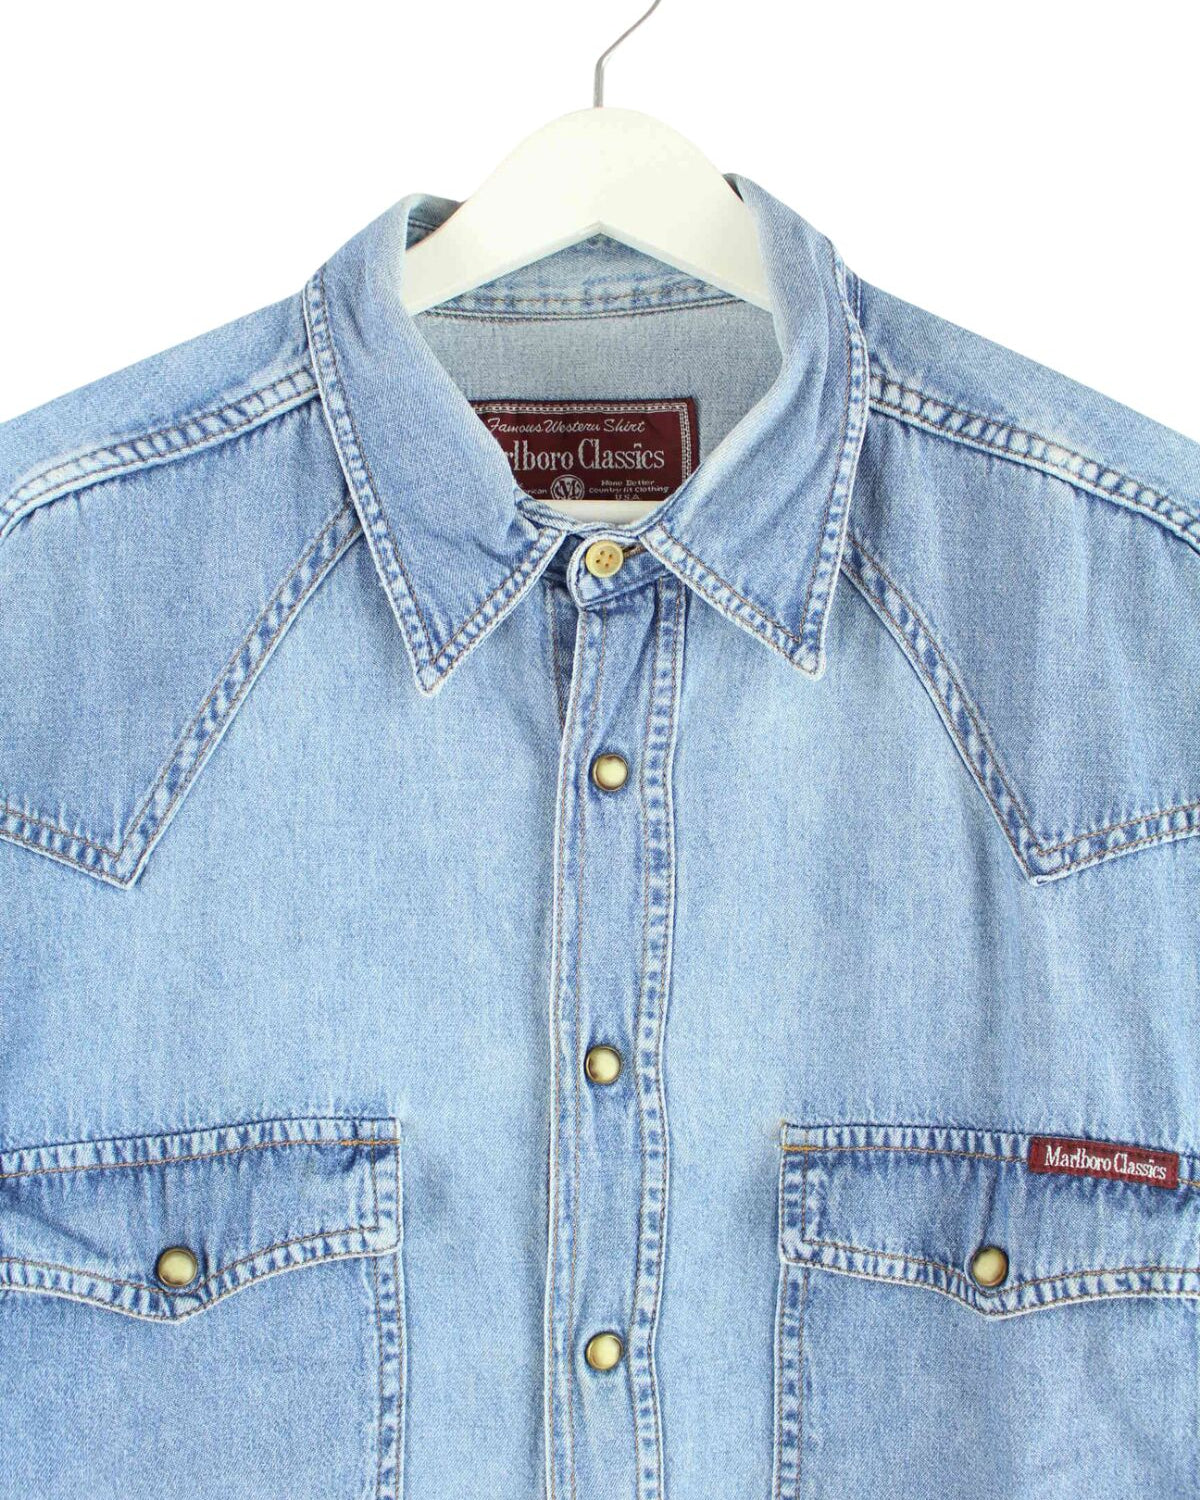 Marlboro 90s Vintage Jeans Hemd Blau XL (back image)